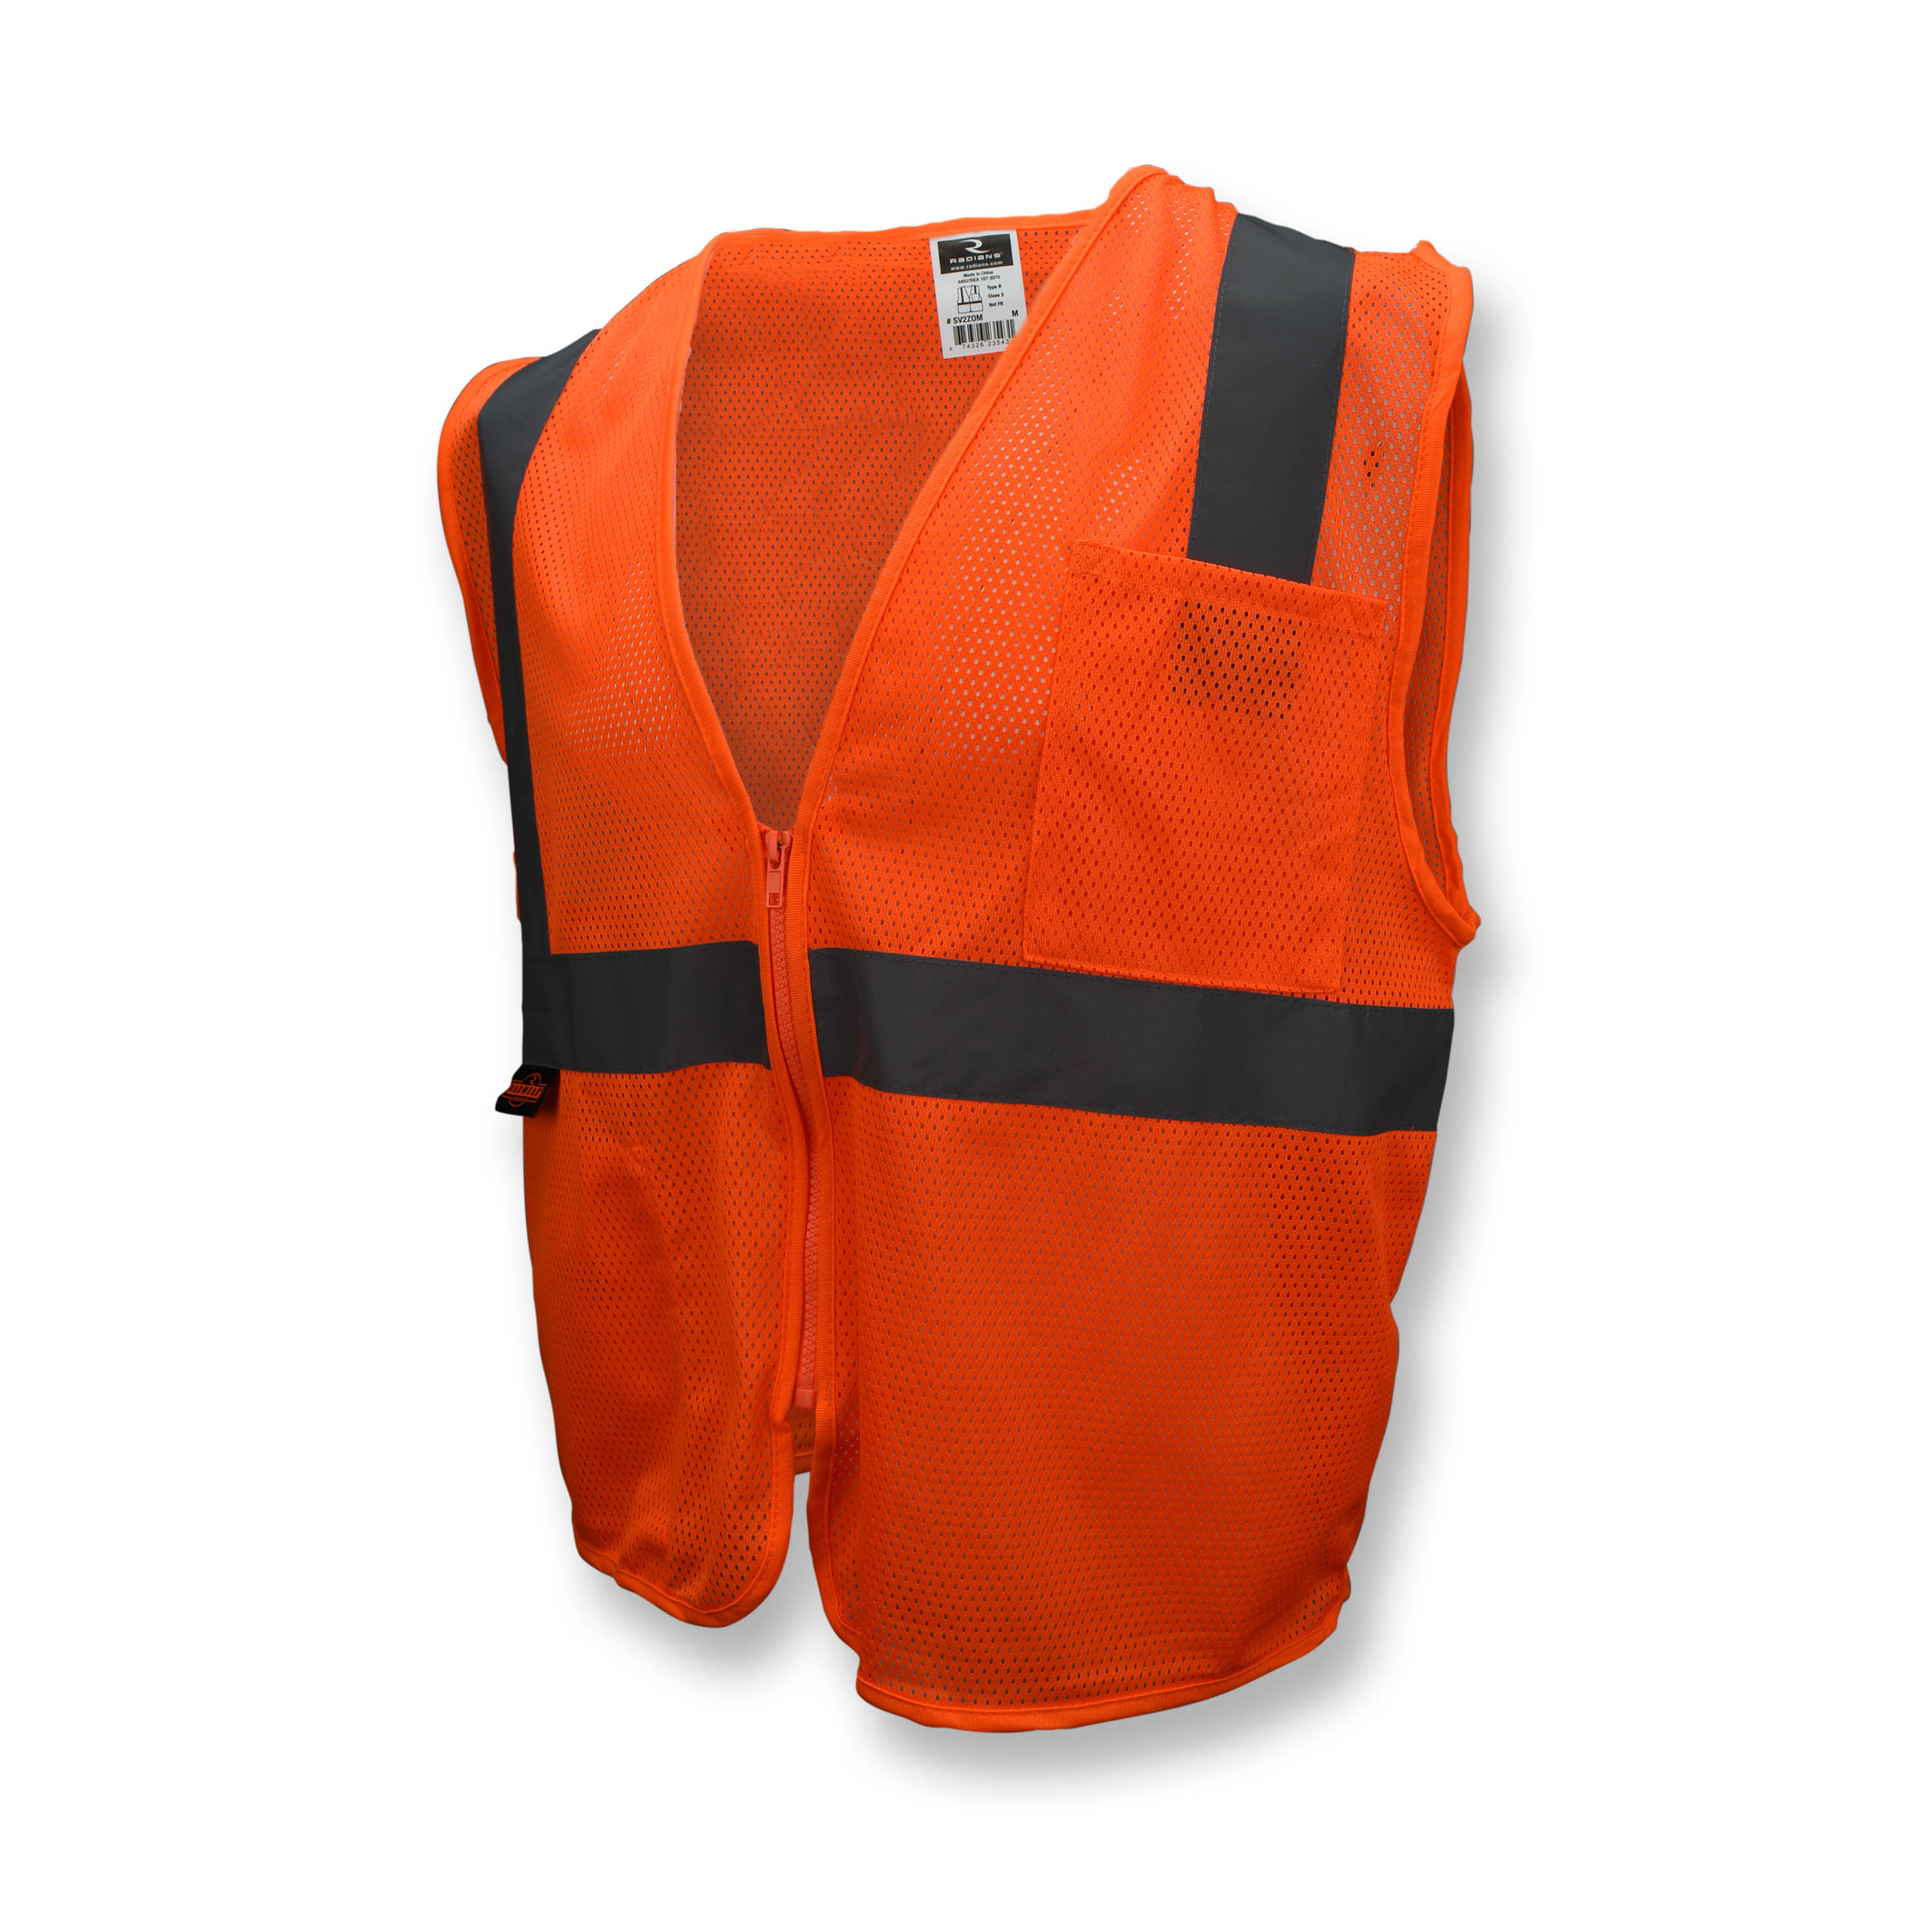 SV2Z Economy Type R Class 2 Mesh Safety Vest with Zipper - Orange - Size 2X - Safety Vests